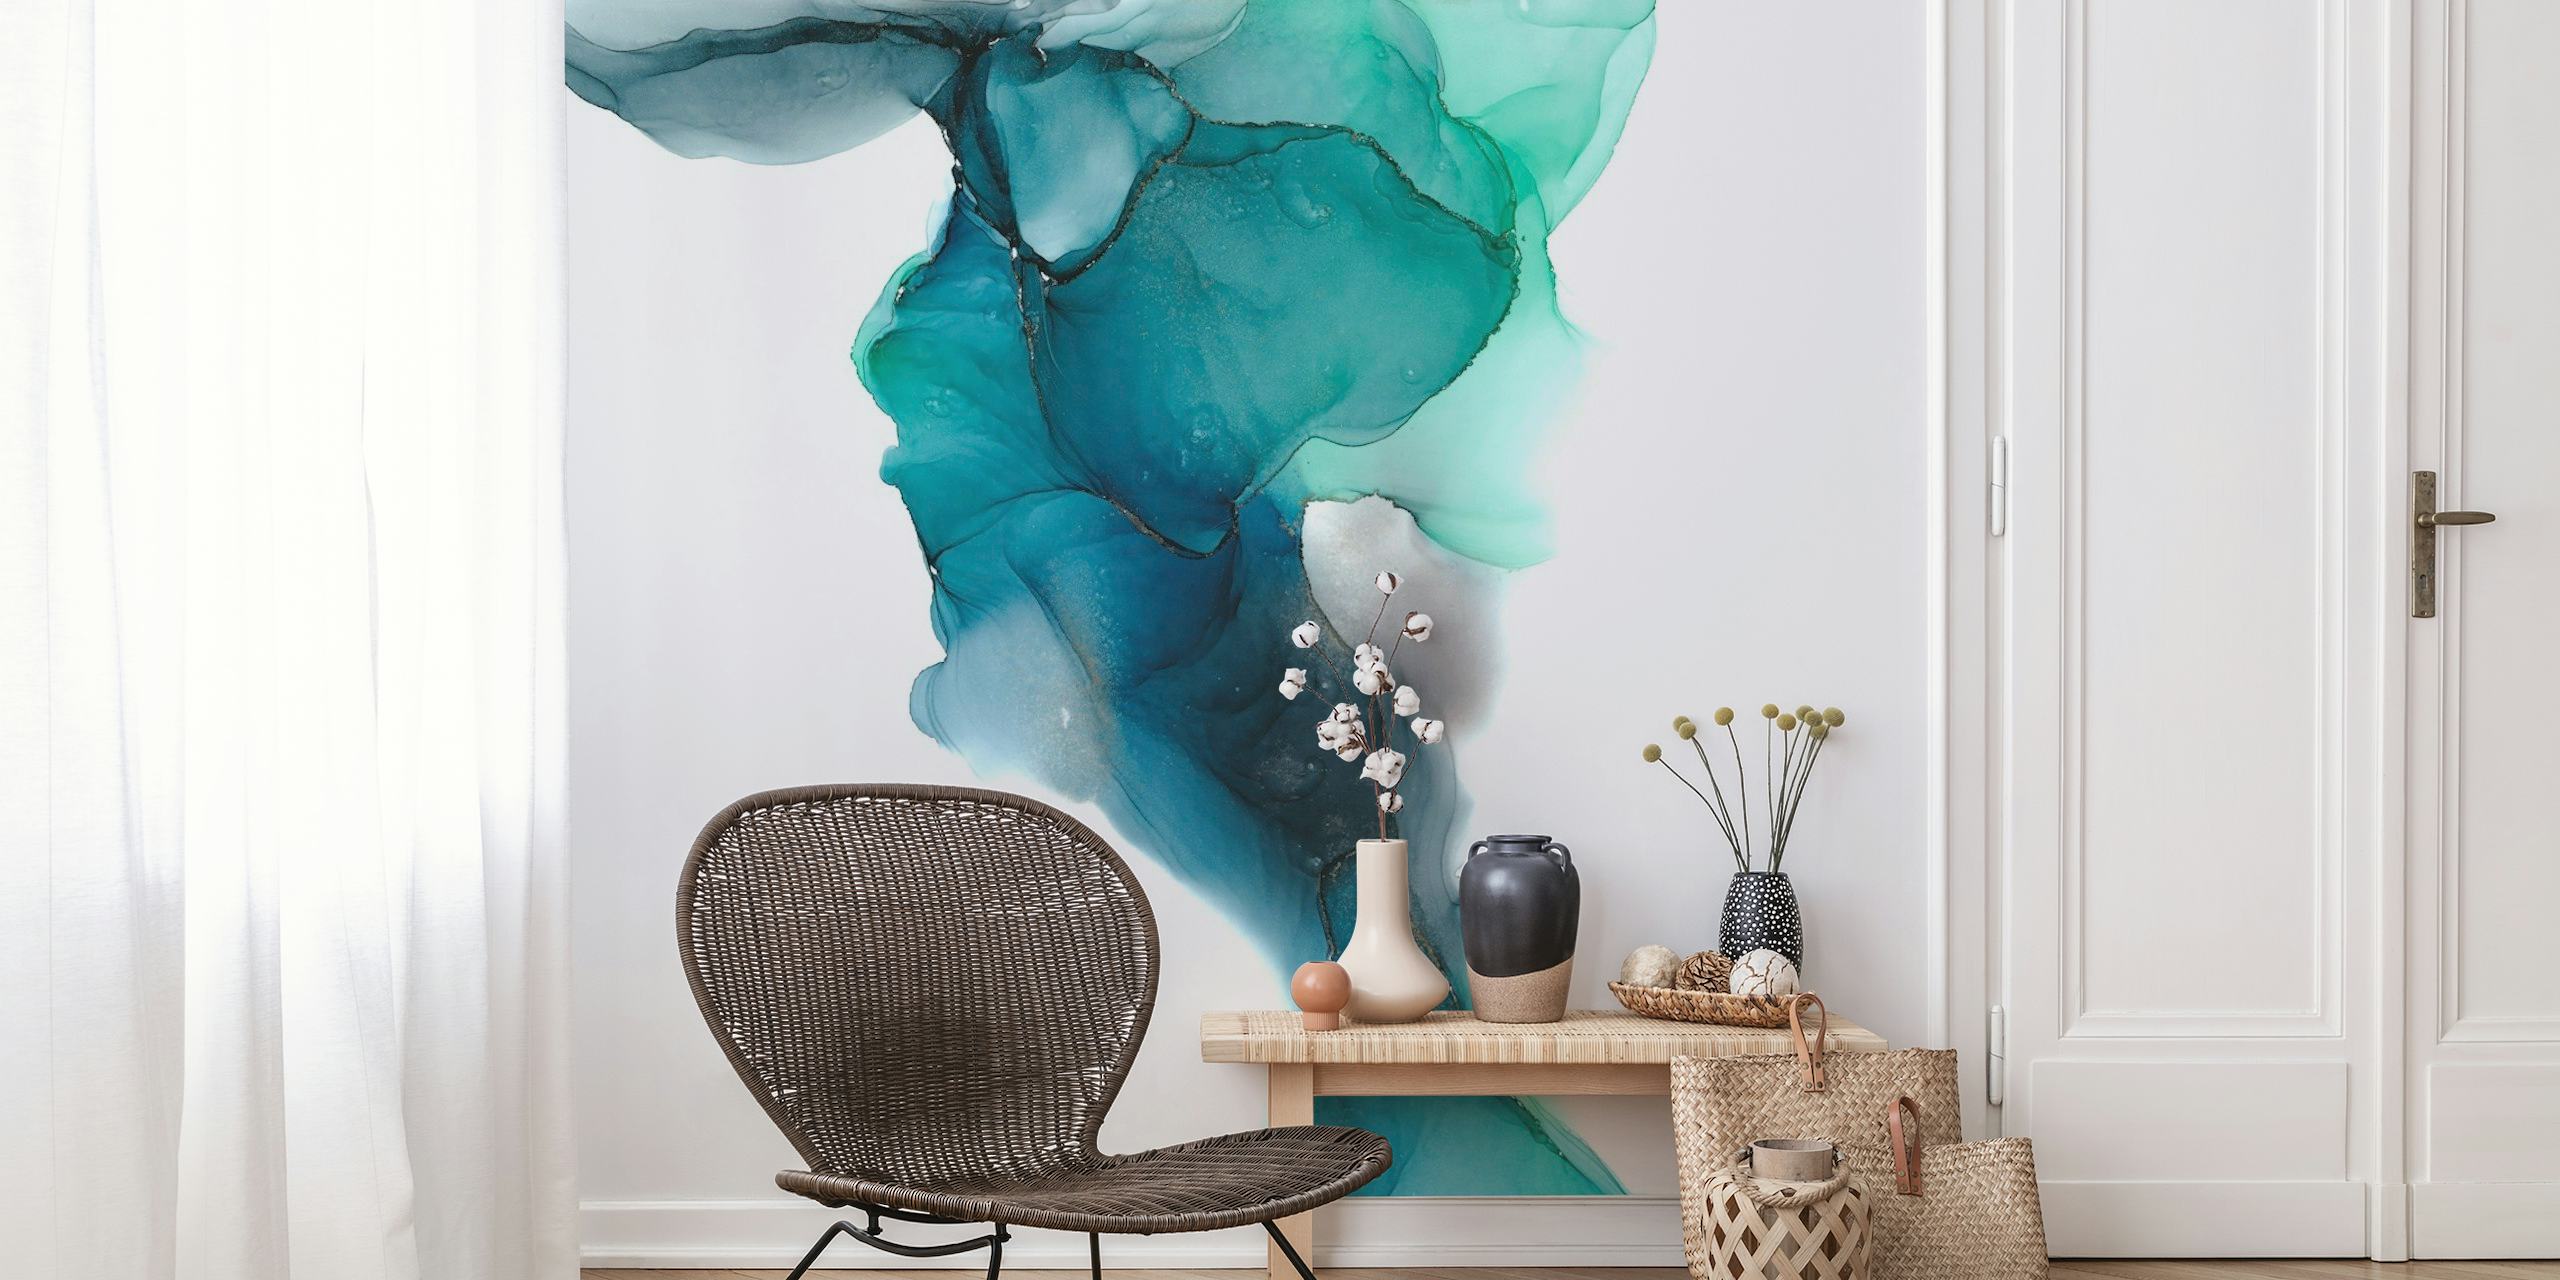 Papier peint abstrait inspiré de l'océan avec des couleurs fluides turquoise et vertes